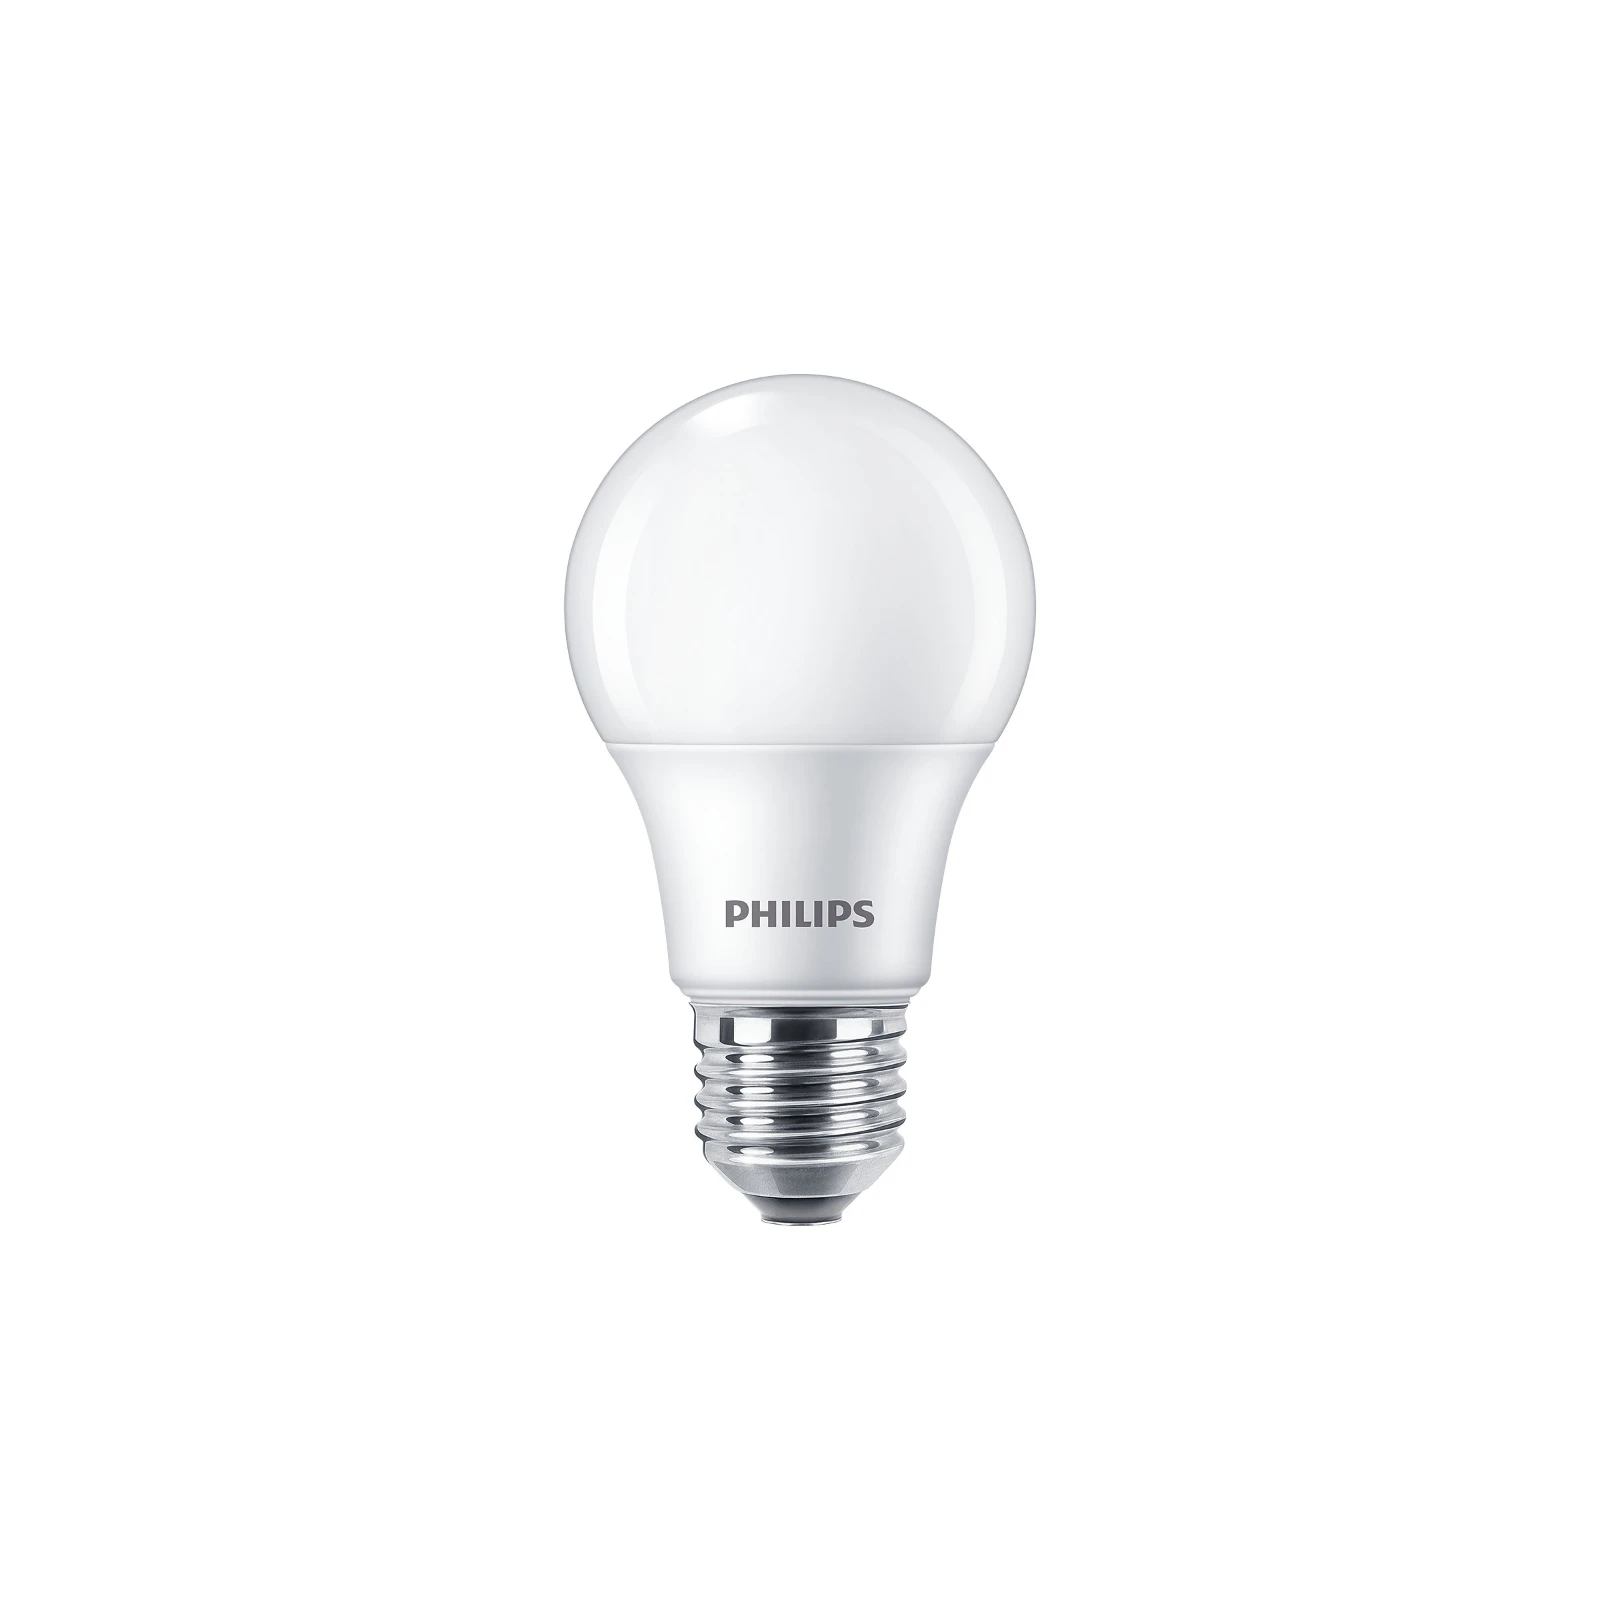 4219942 - Philips LED bulb